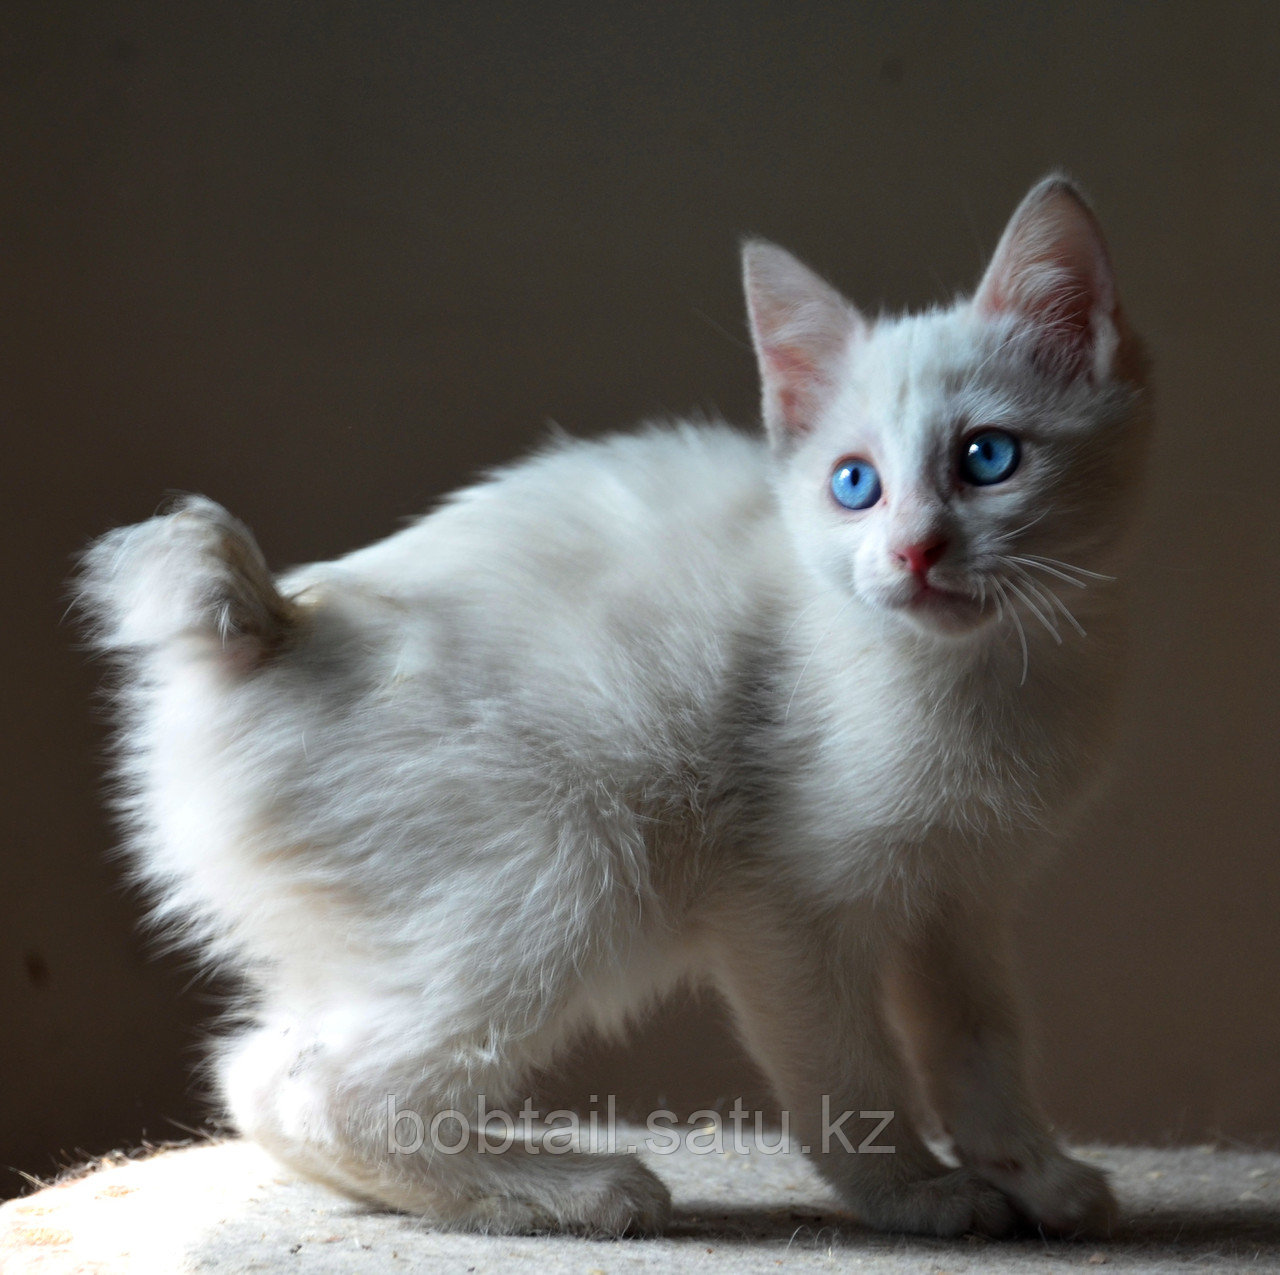 Котенок! Кошка белая! Порода "Курильский бобтейл"